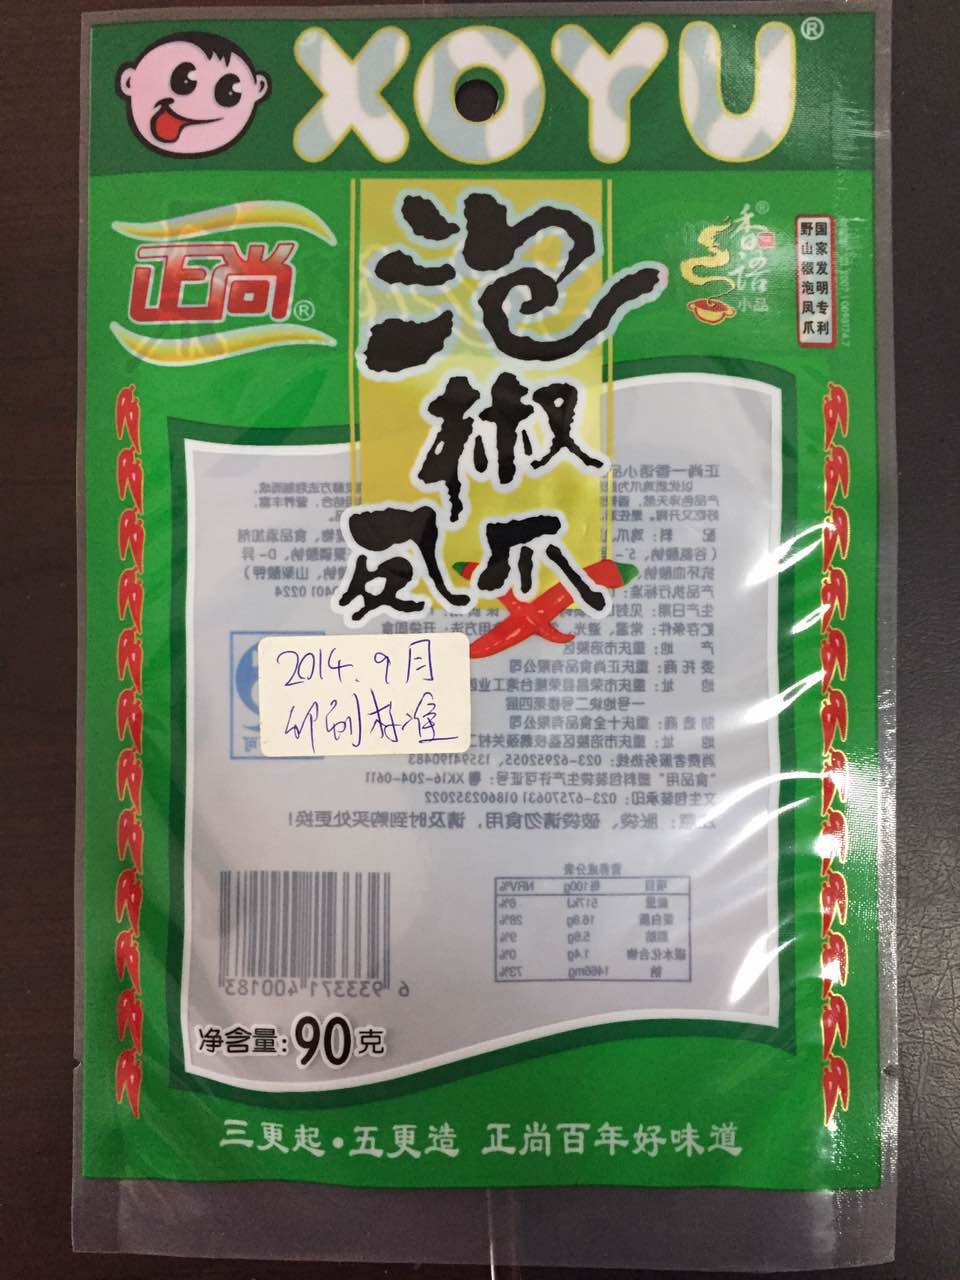 豆干泡椒凤爪食品包装袋厂家直销批发商价格 豆干零食包装袋厂家供应报价